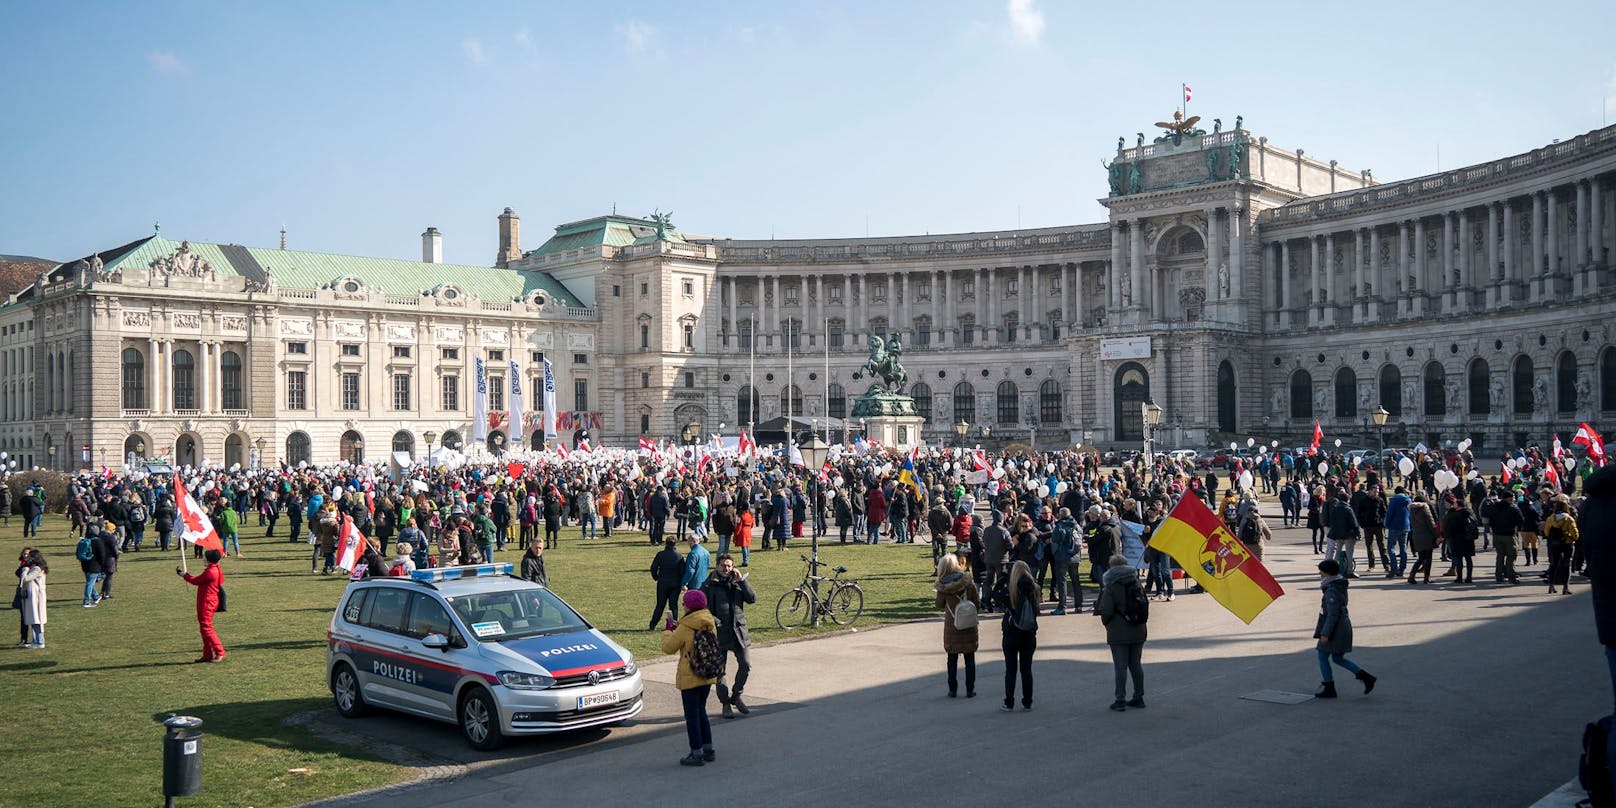 Mehrere Demos (unter anderem zur Impfthematik, hier im Bild) sorgen am Wochenende für Sperren in Wien.